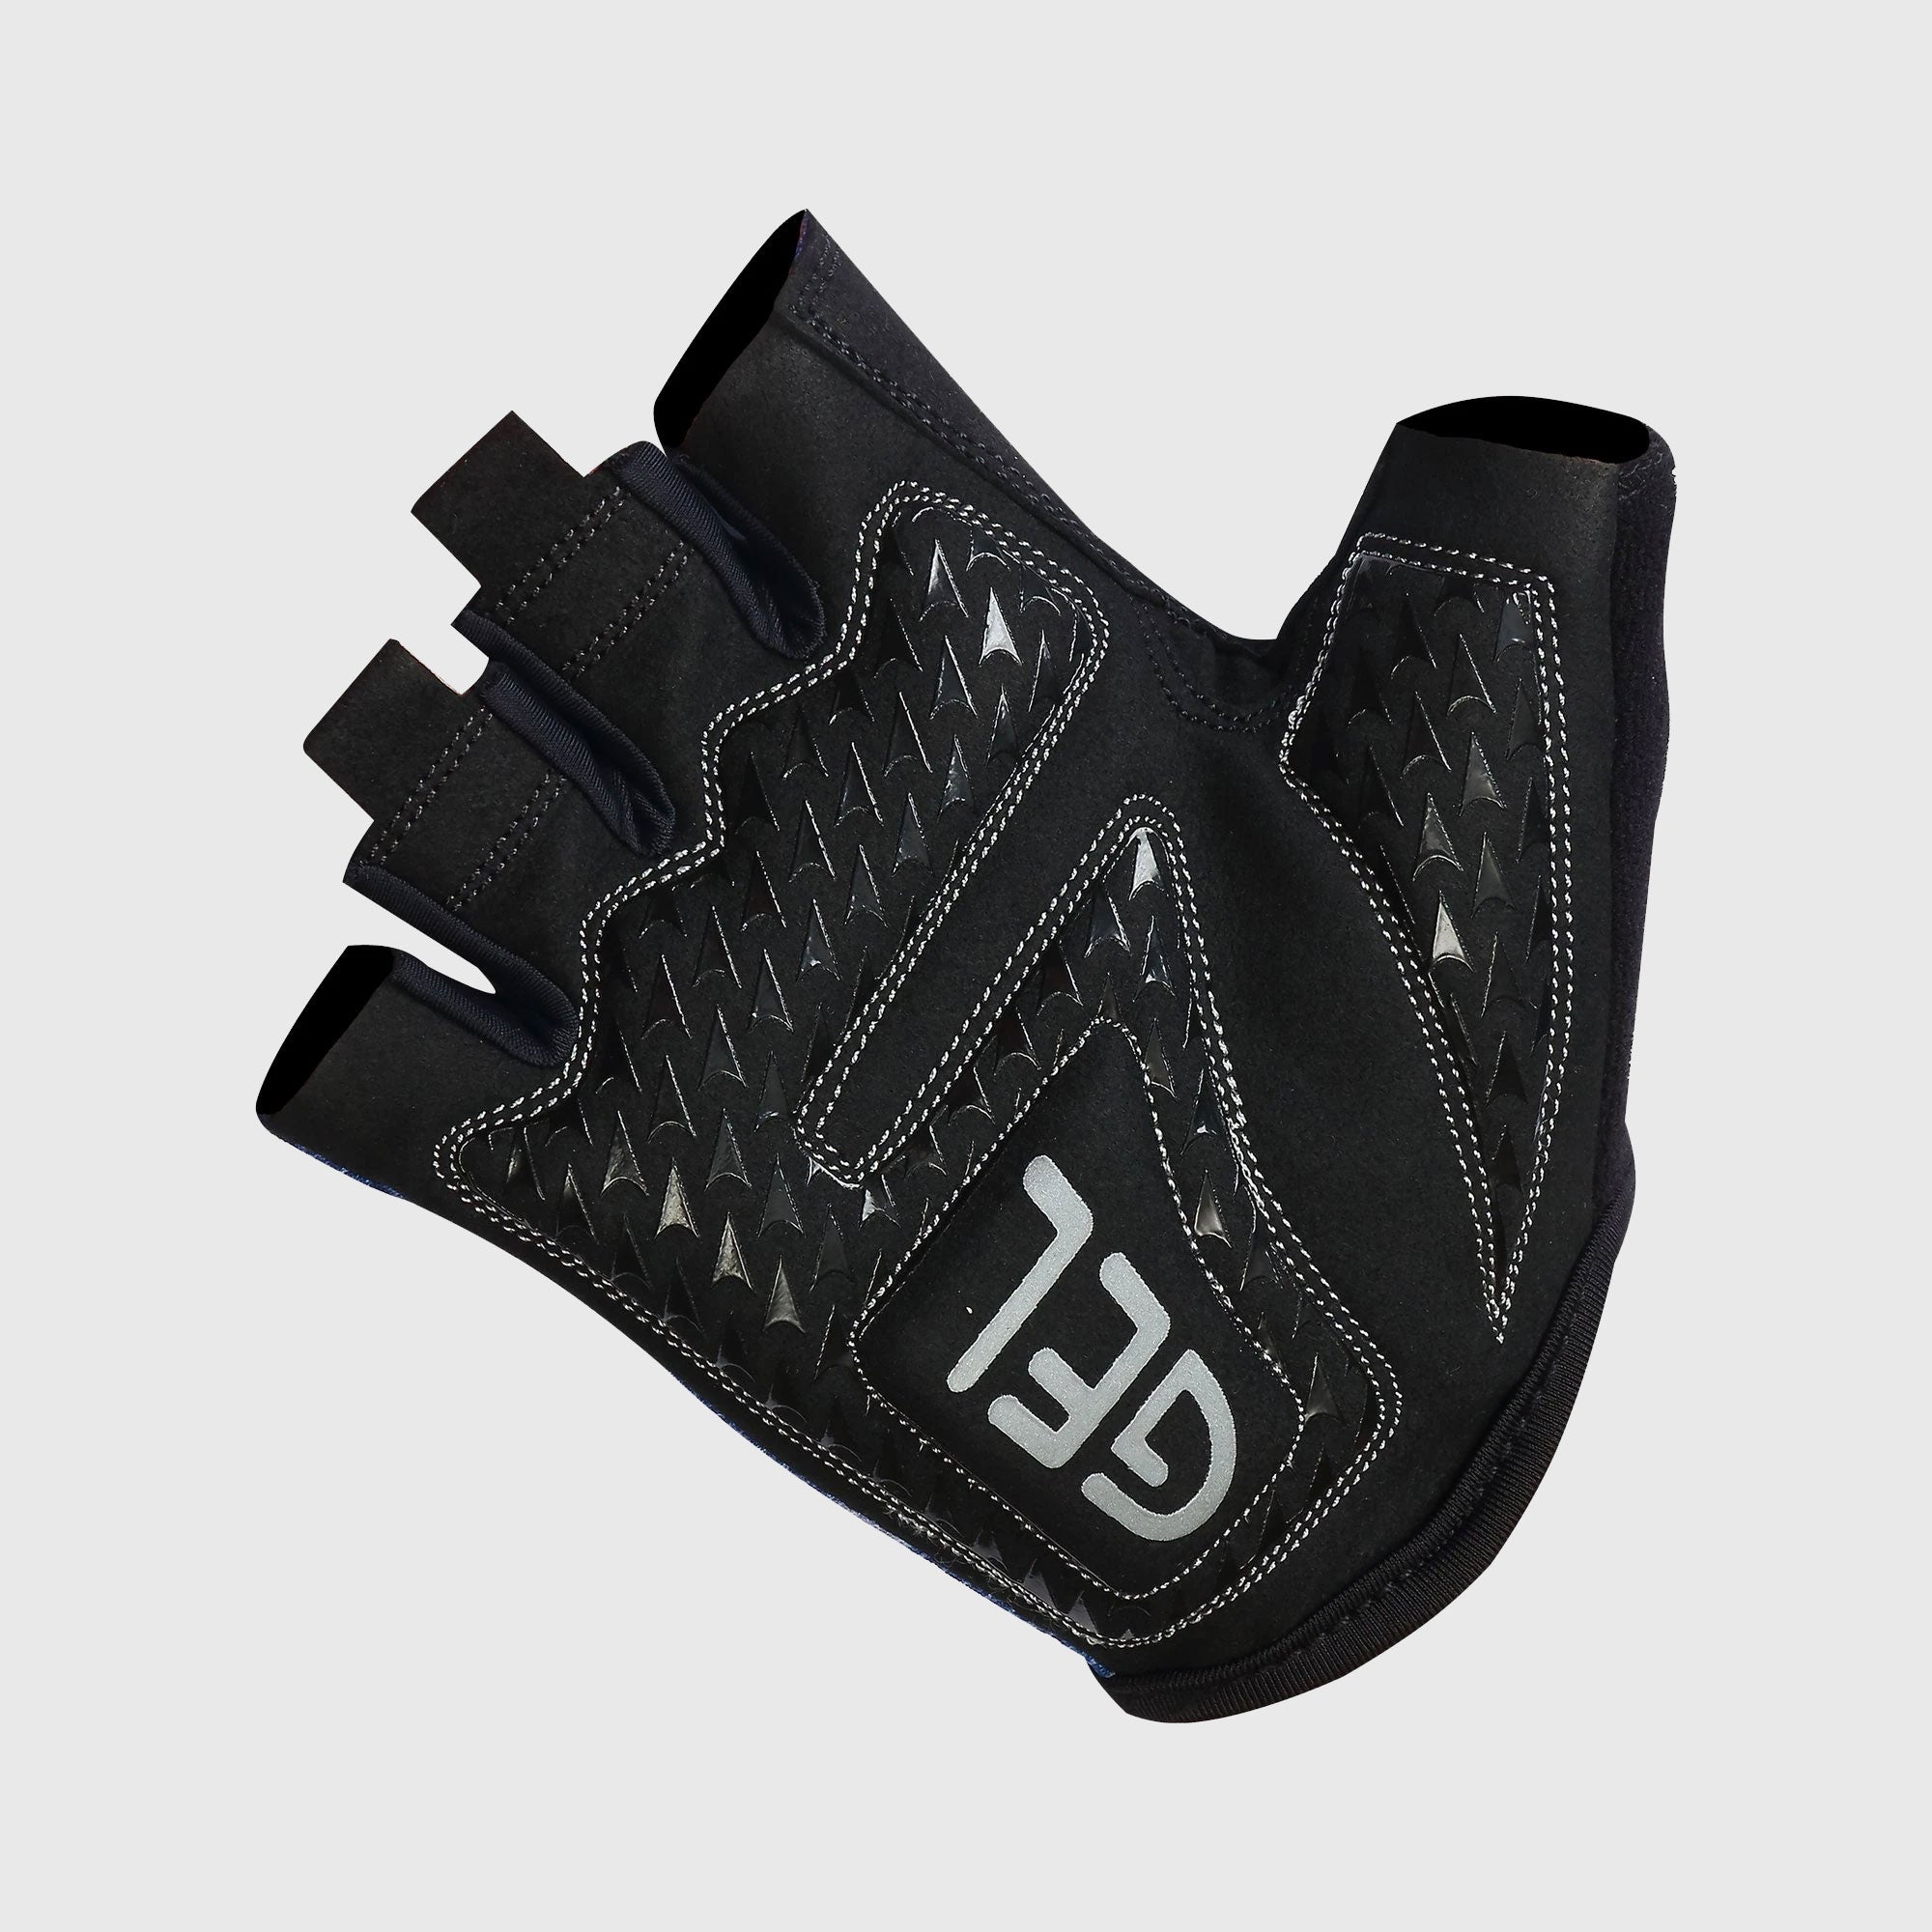 Fdx Black & Red Short Finger Cycling Gloves for Summer MTB Road Bike fingerless, anti slip & Breathable - Classic II